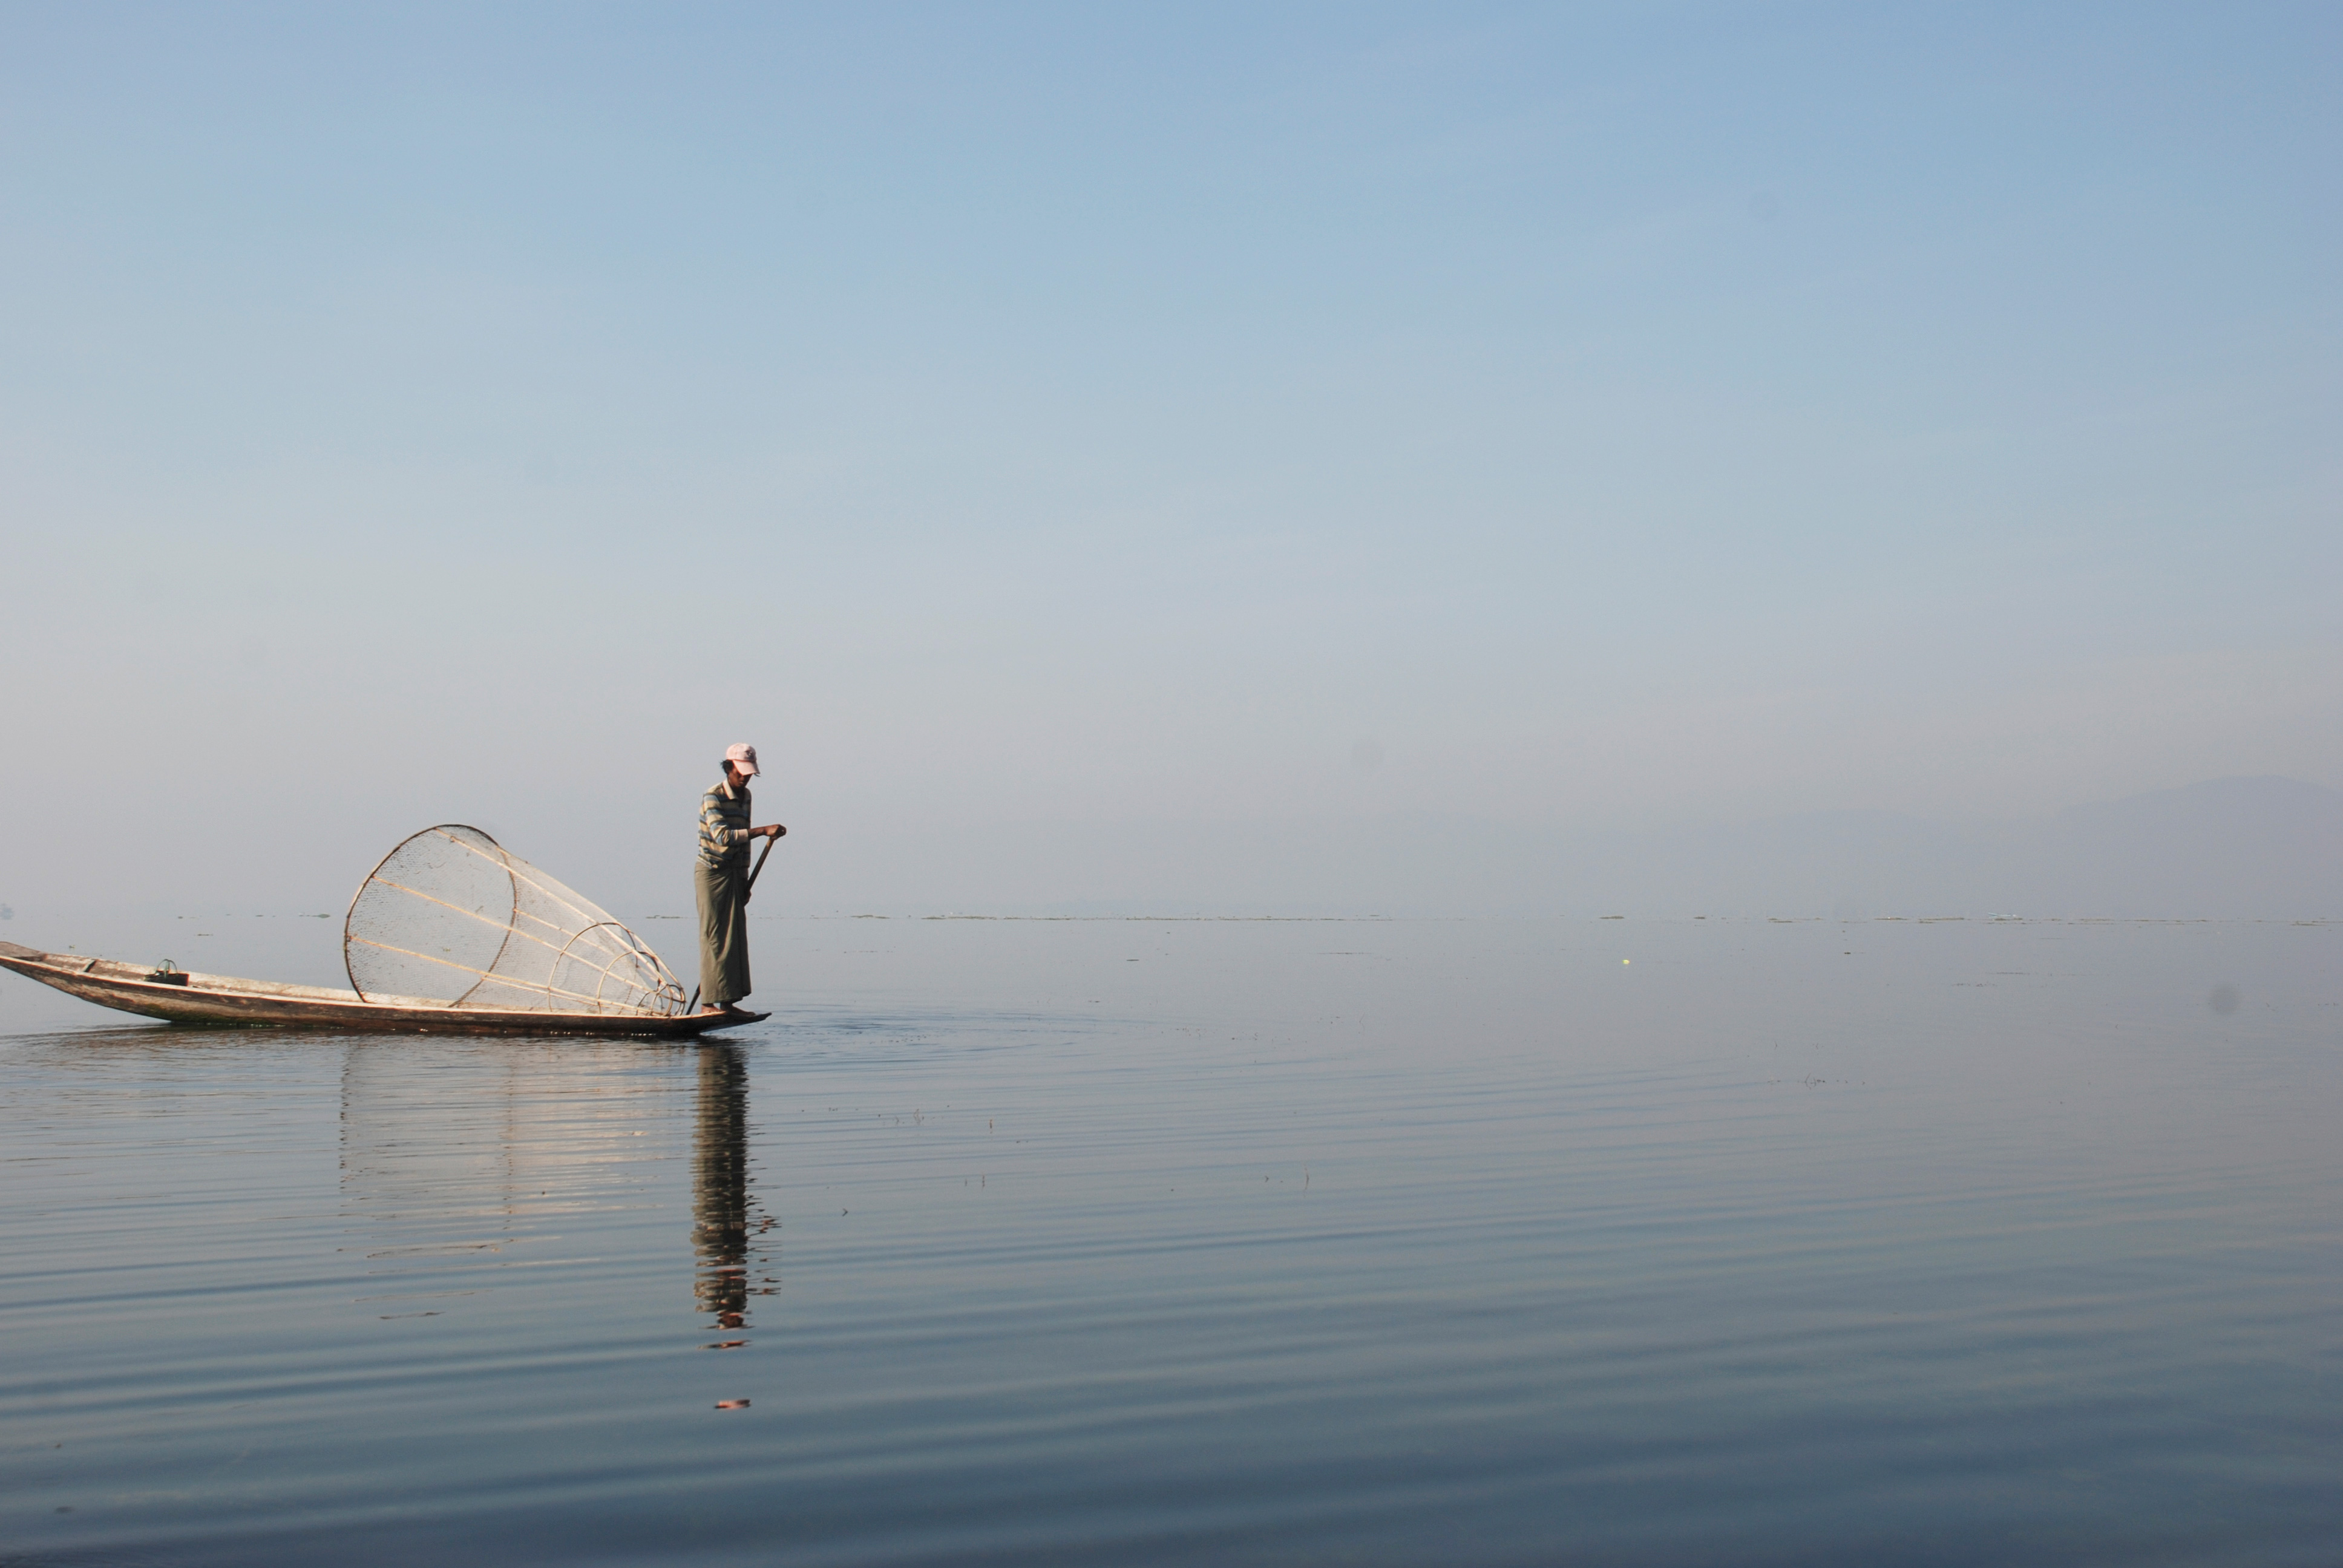 Озеро Инле в Бирме. Утро. Это рыбак, озеро мелкое, вода прозрачная и рыбу ловят, накрывая этим сетчатым колпаком, а потом-острогой.  2007